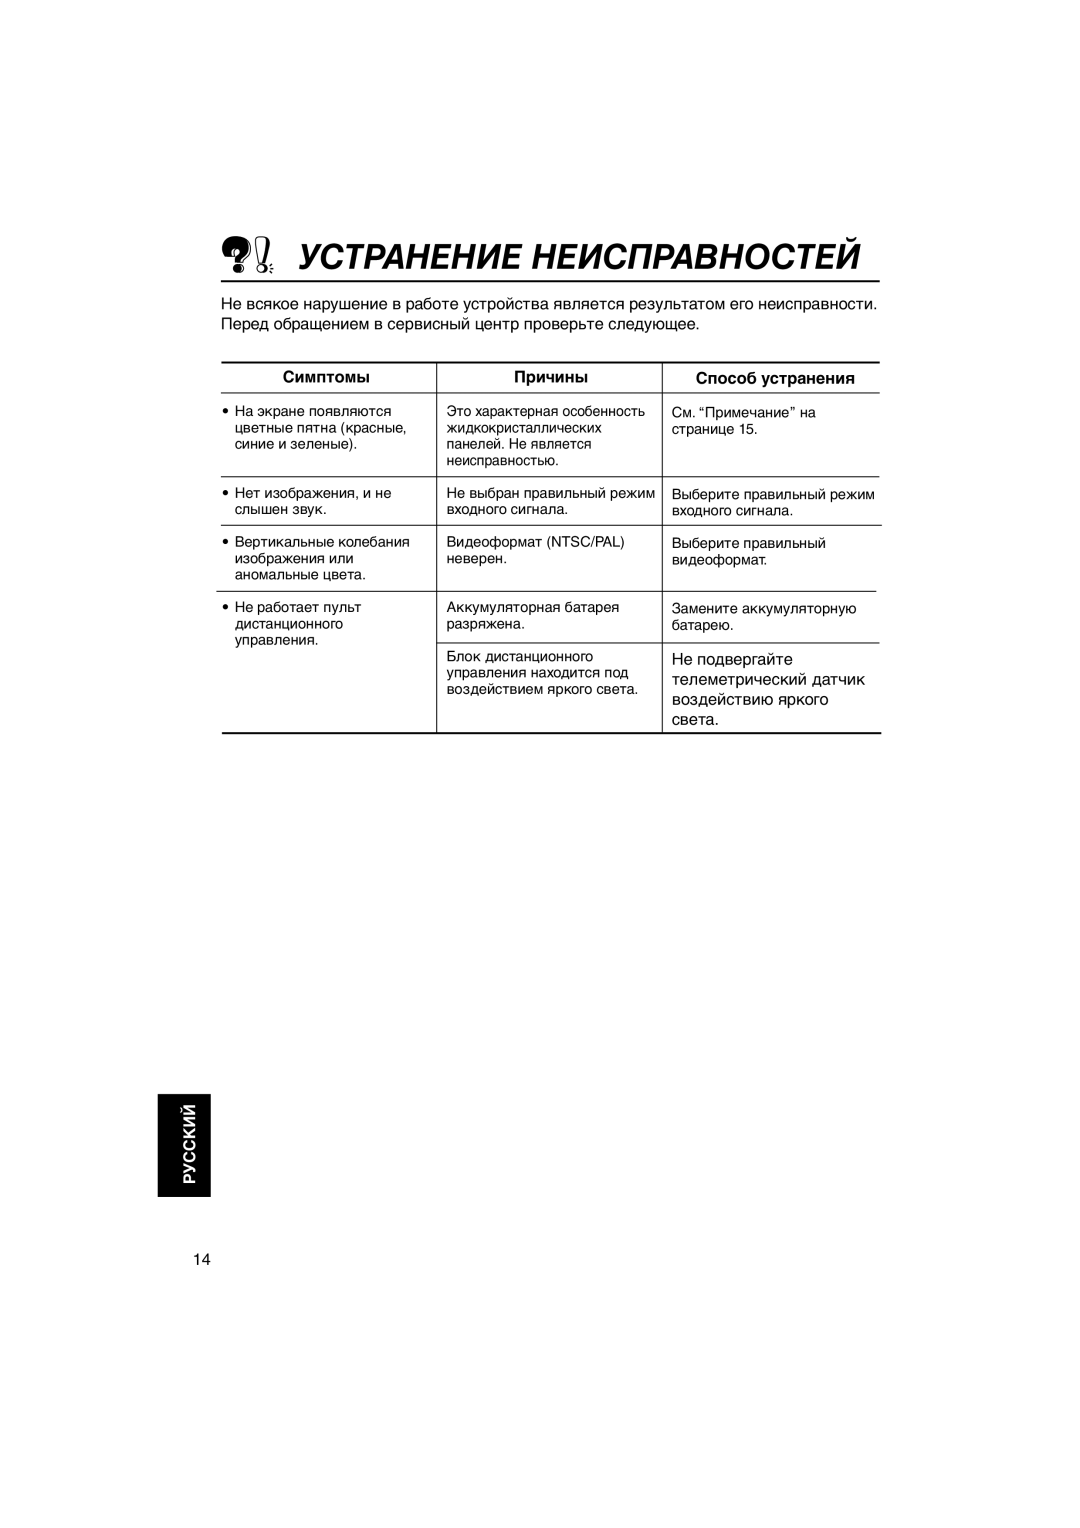 JVC KV-MH6500 manual Устранение Неисправностей, Симптомы, Причины, Способ устранения, Руcckий 